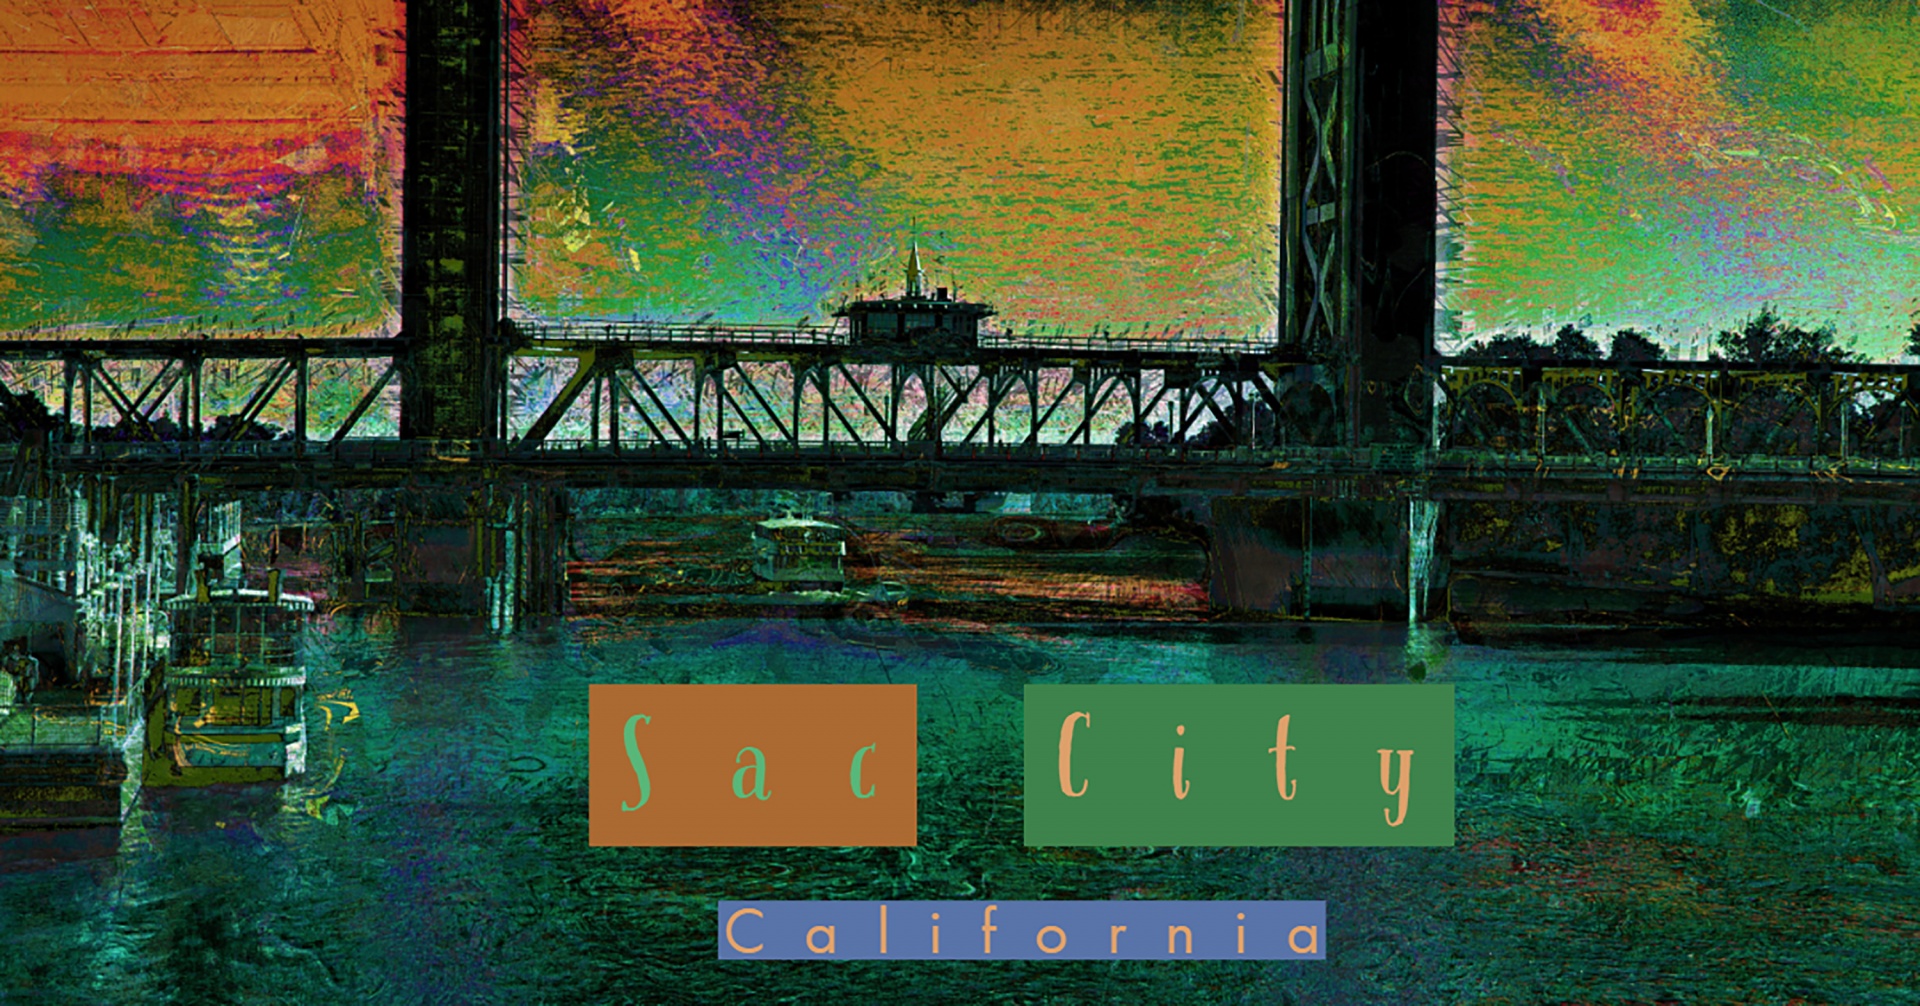 Cestovní plakát Sacramento